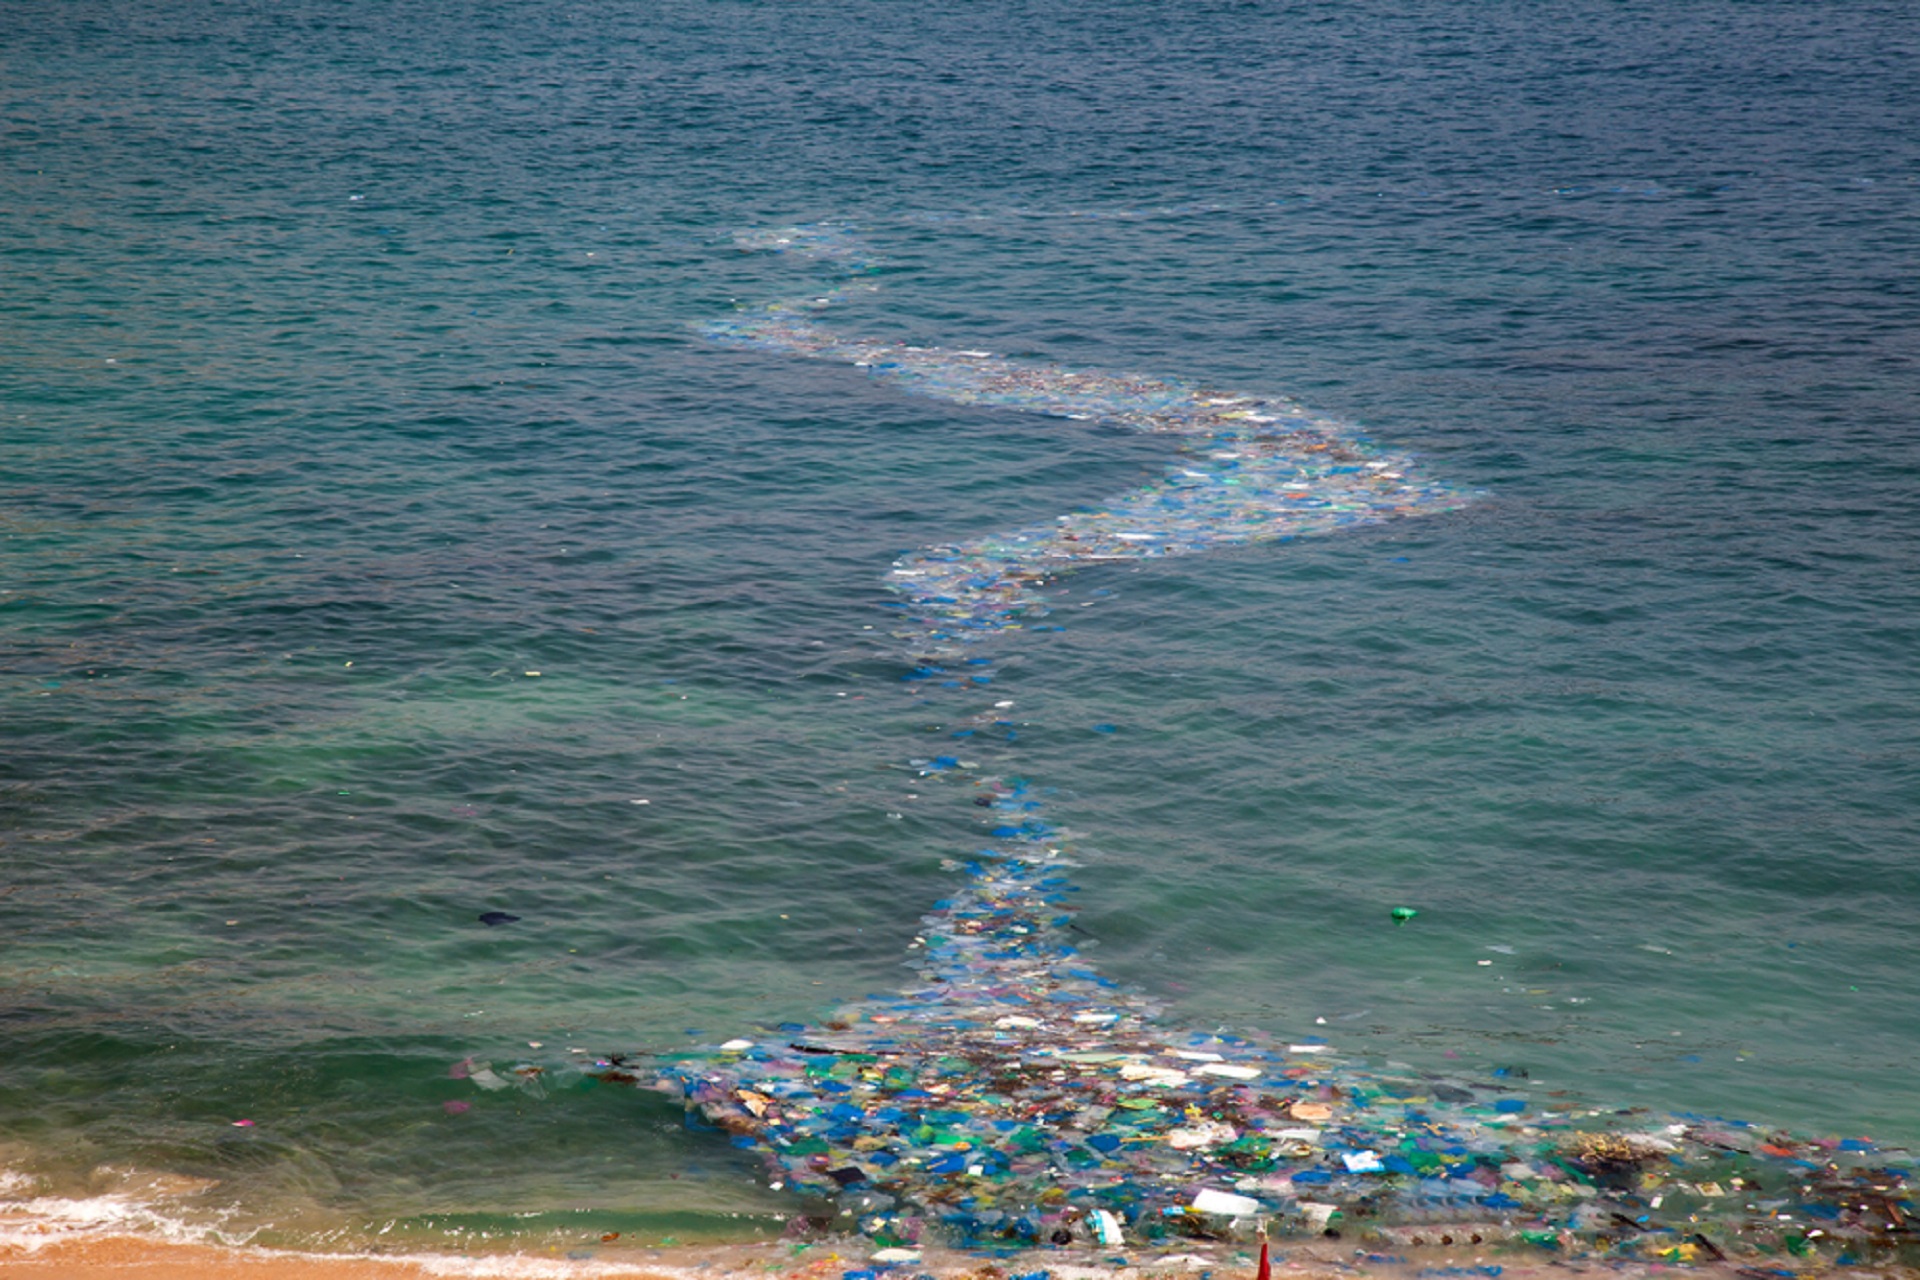 CHINY ZALEWAJĄ OCEAN PLASTIKOWYMI ODPADAMI Z CAŁEGO ŚWIATA